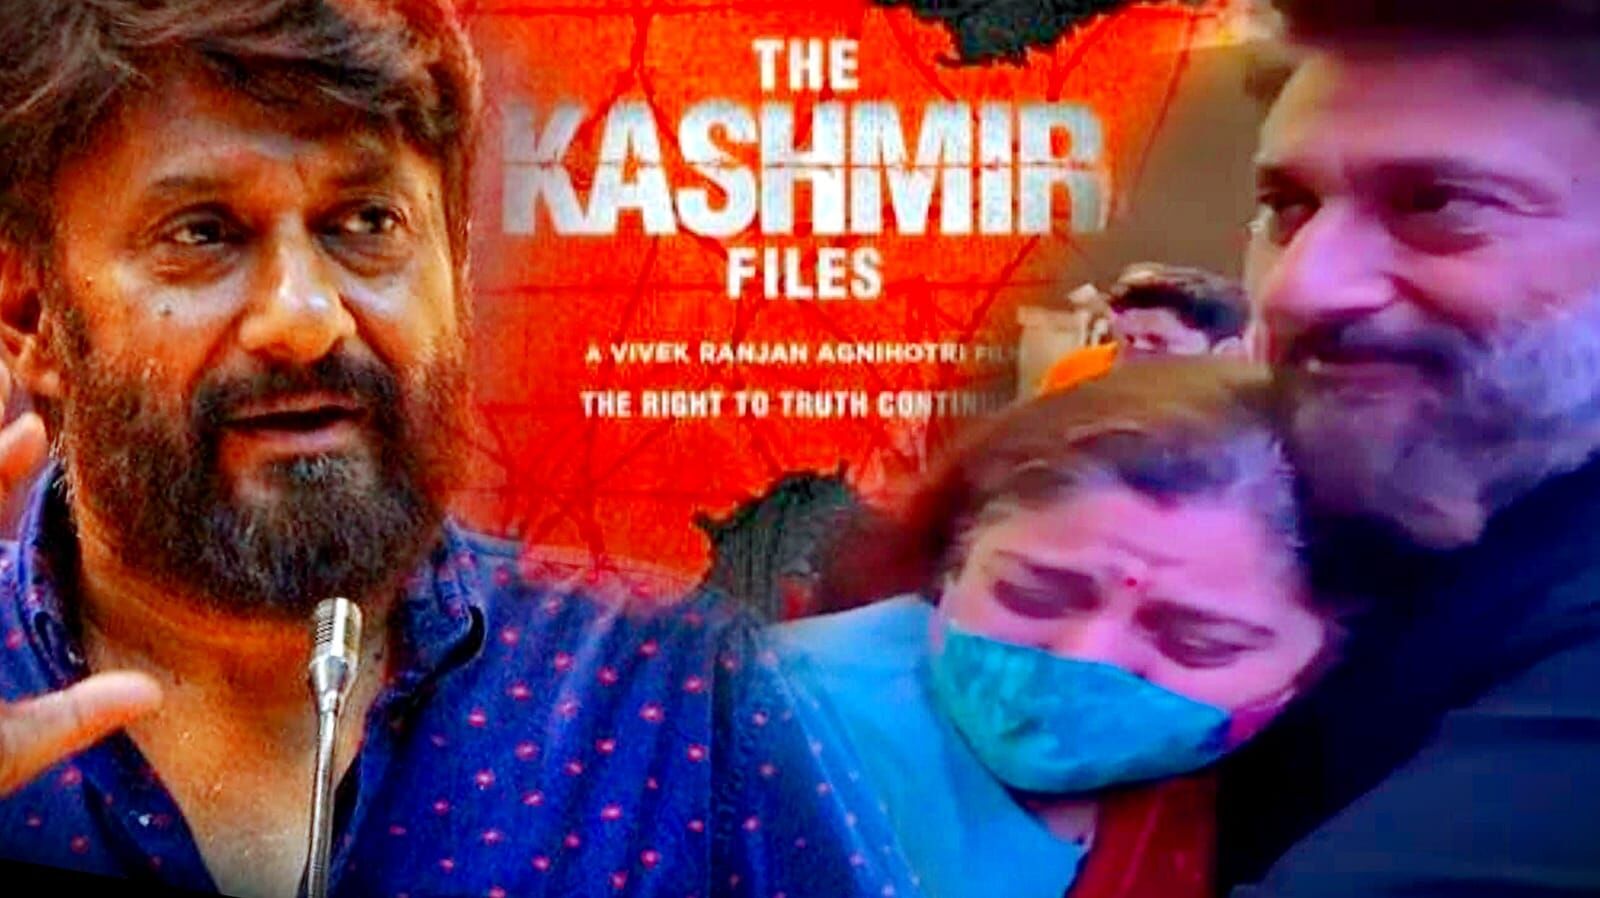 The Kashmir Files : डायरेक्टर विवेक अग्निहोत्री बैंकॉक वीडियो पर हुए ट्रोल, जानिए वजह